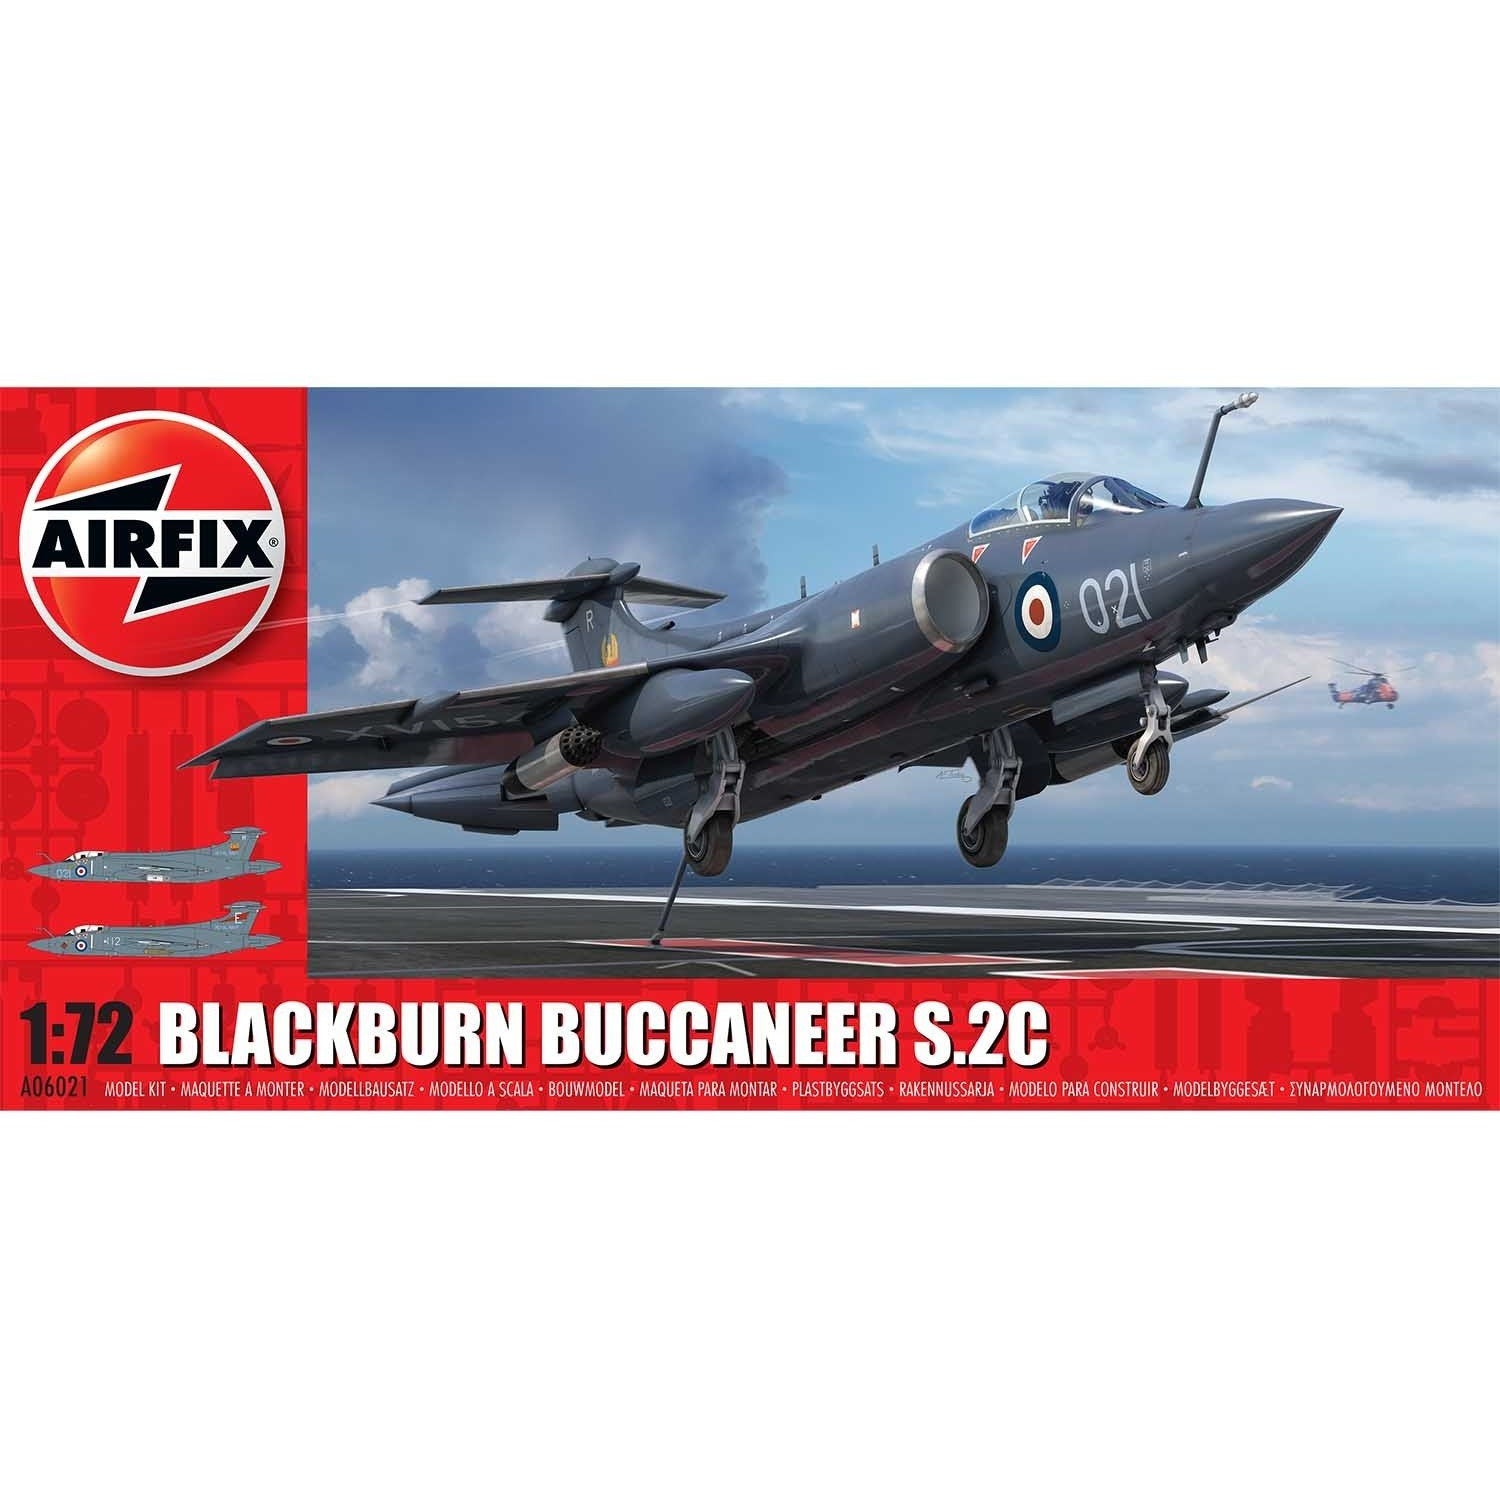 Blackburn Buccaneer S.2C RN 1/72 by Airfix